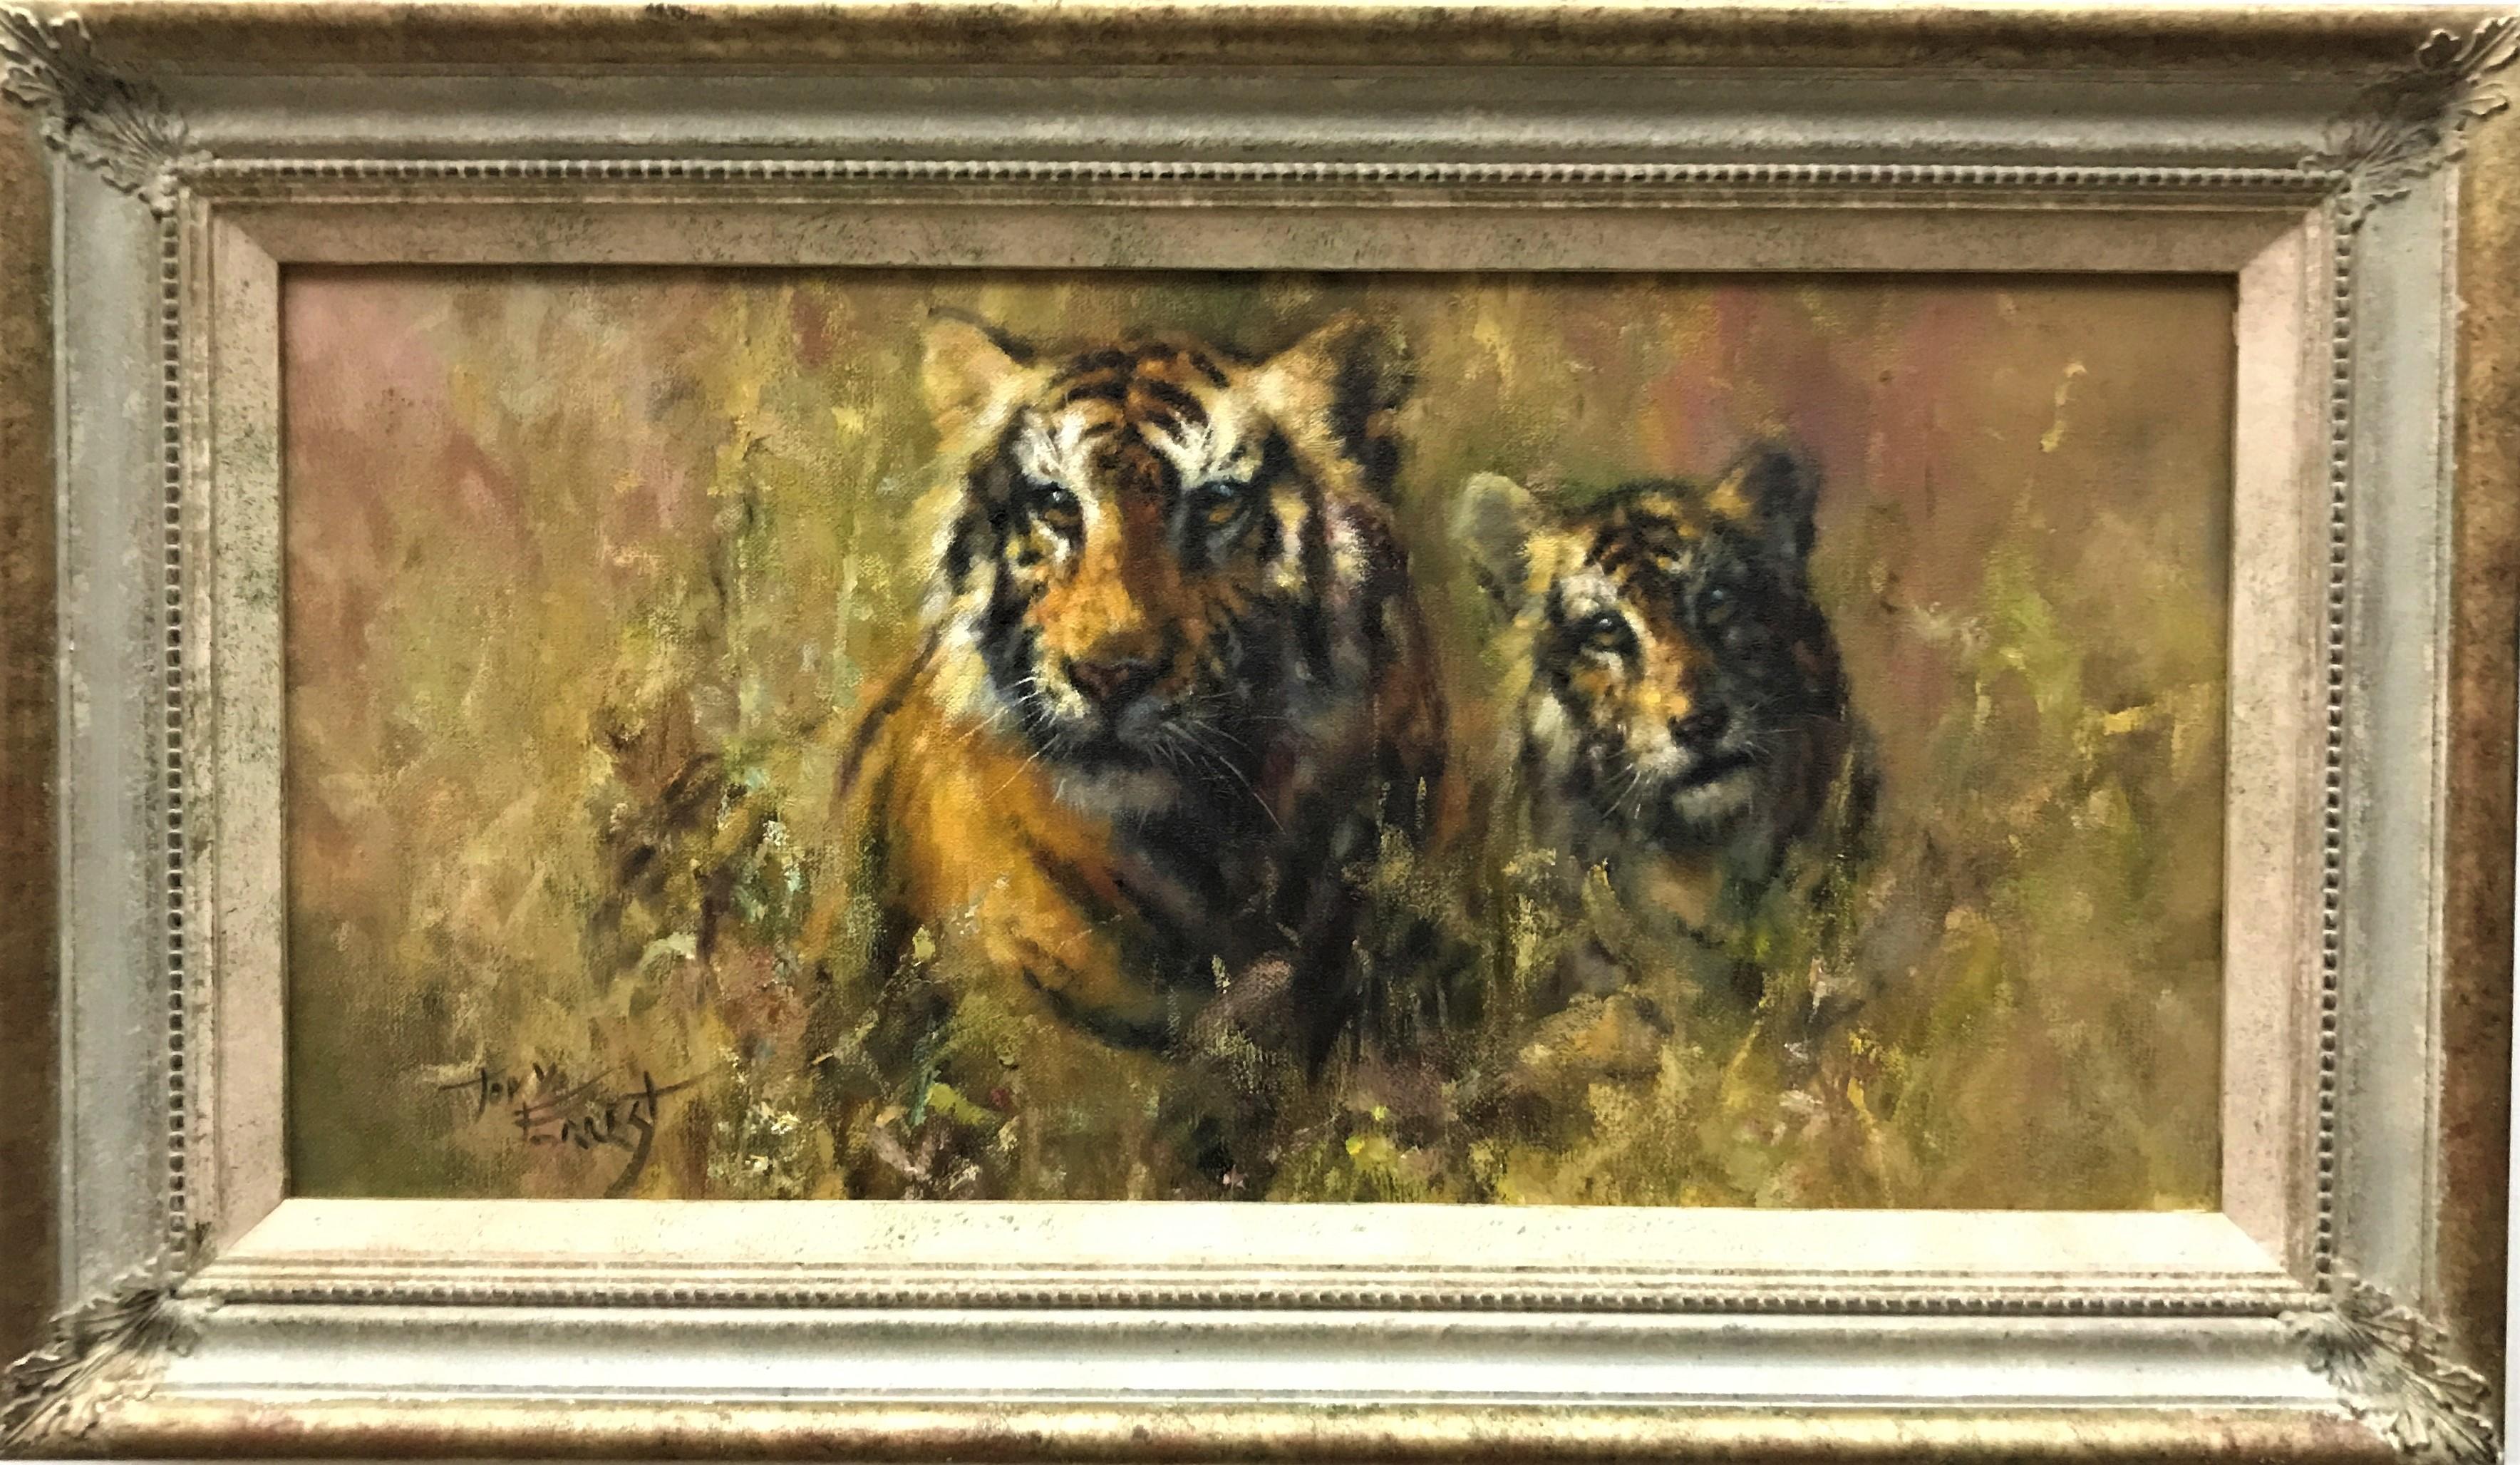 Tiger & Würfel in Gräsern, Öl auf Leinwand, britischer realistischer Maler des 20. Jahrhunderts – Painting von Tony Forrest